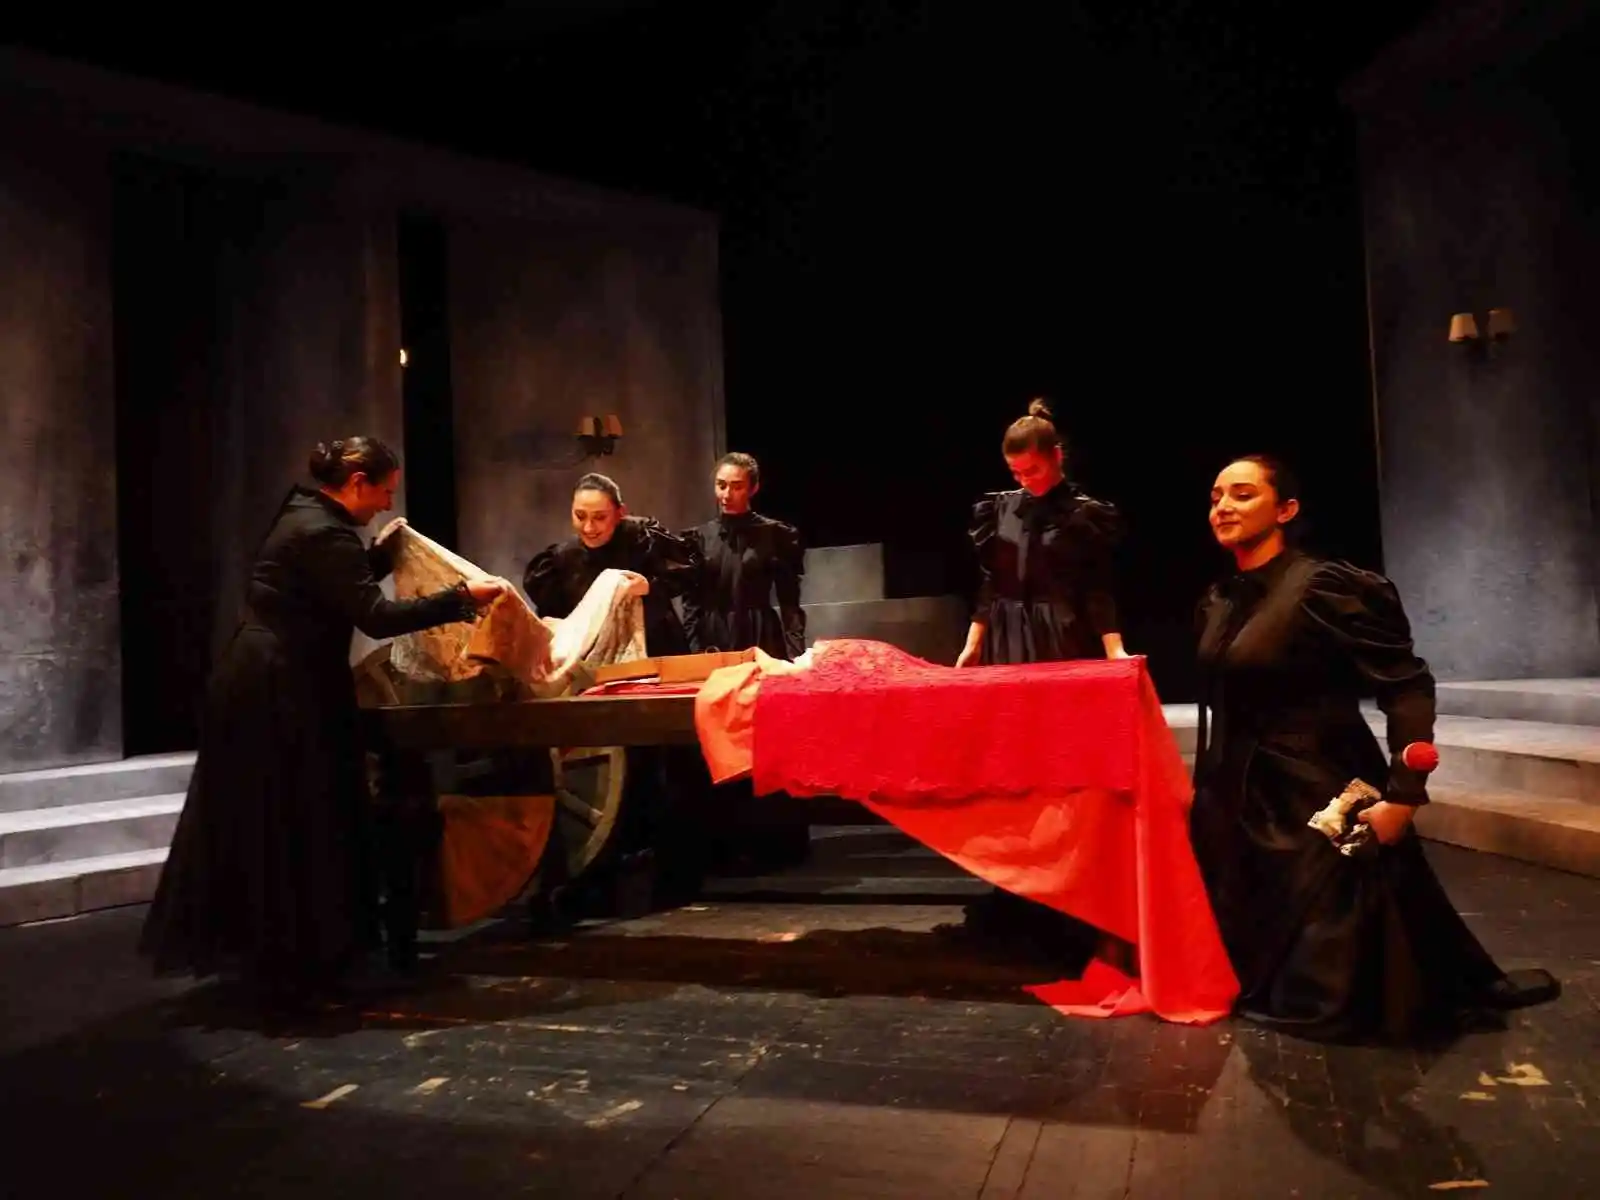 "Bernerda Alba'nın Evi" adlı tiyatro oyunu SDT'de sahnelenecek
, SİVAS haberleri